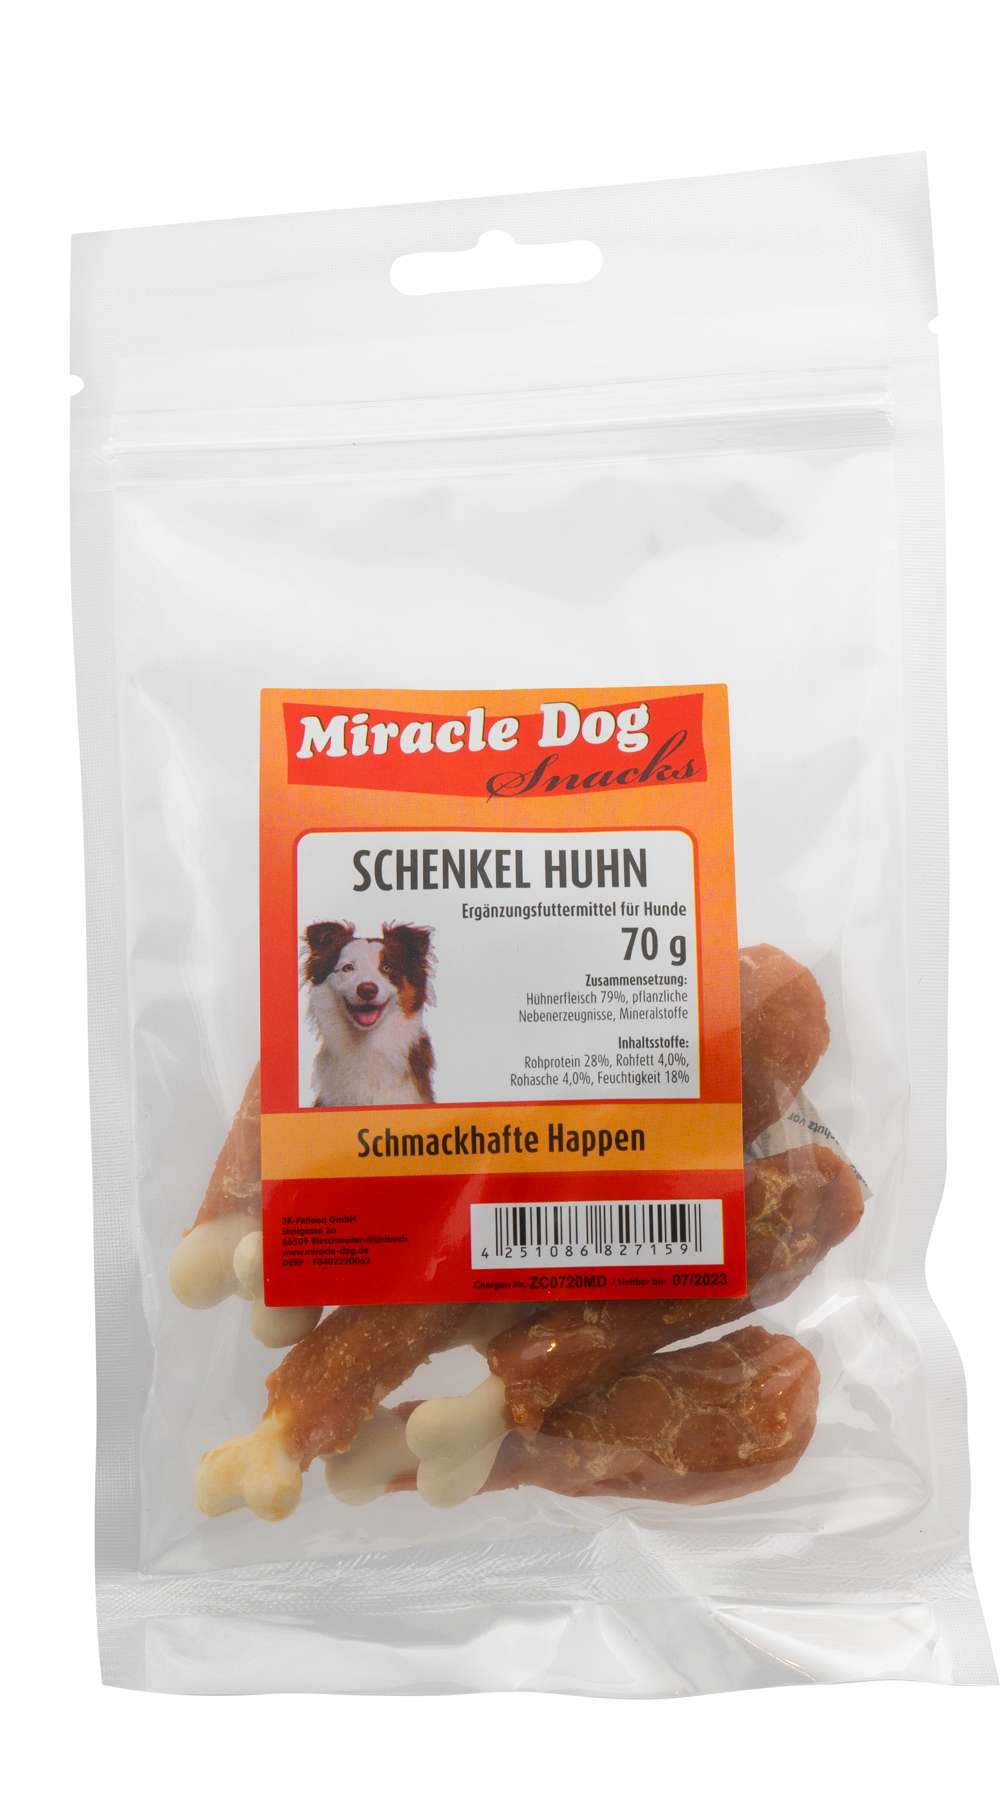 Miracle Dog Schenkel Huhn